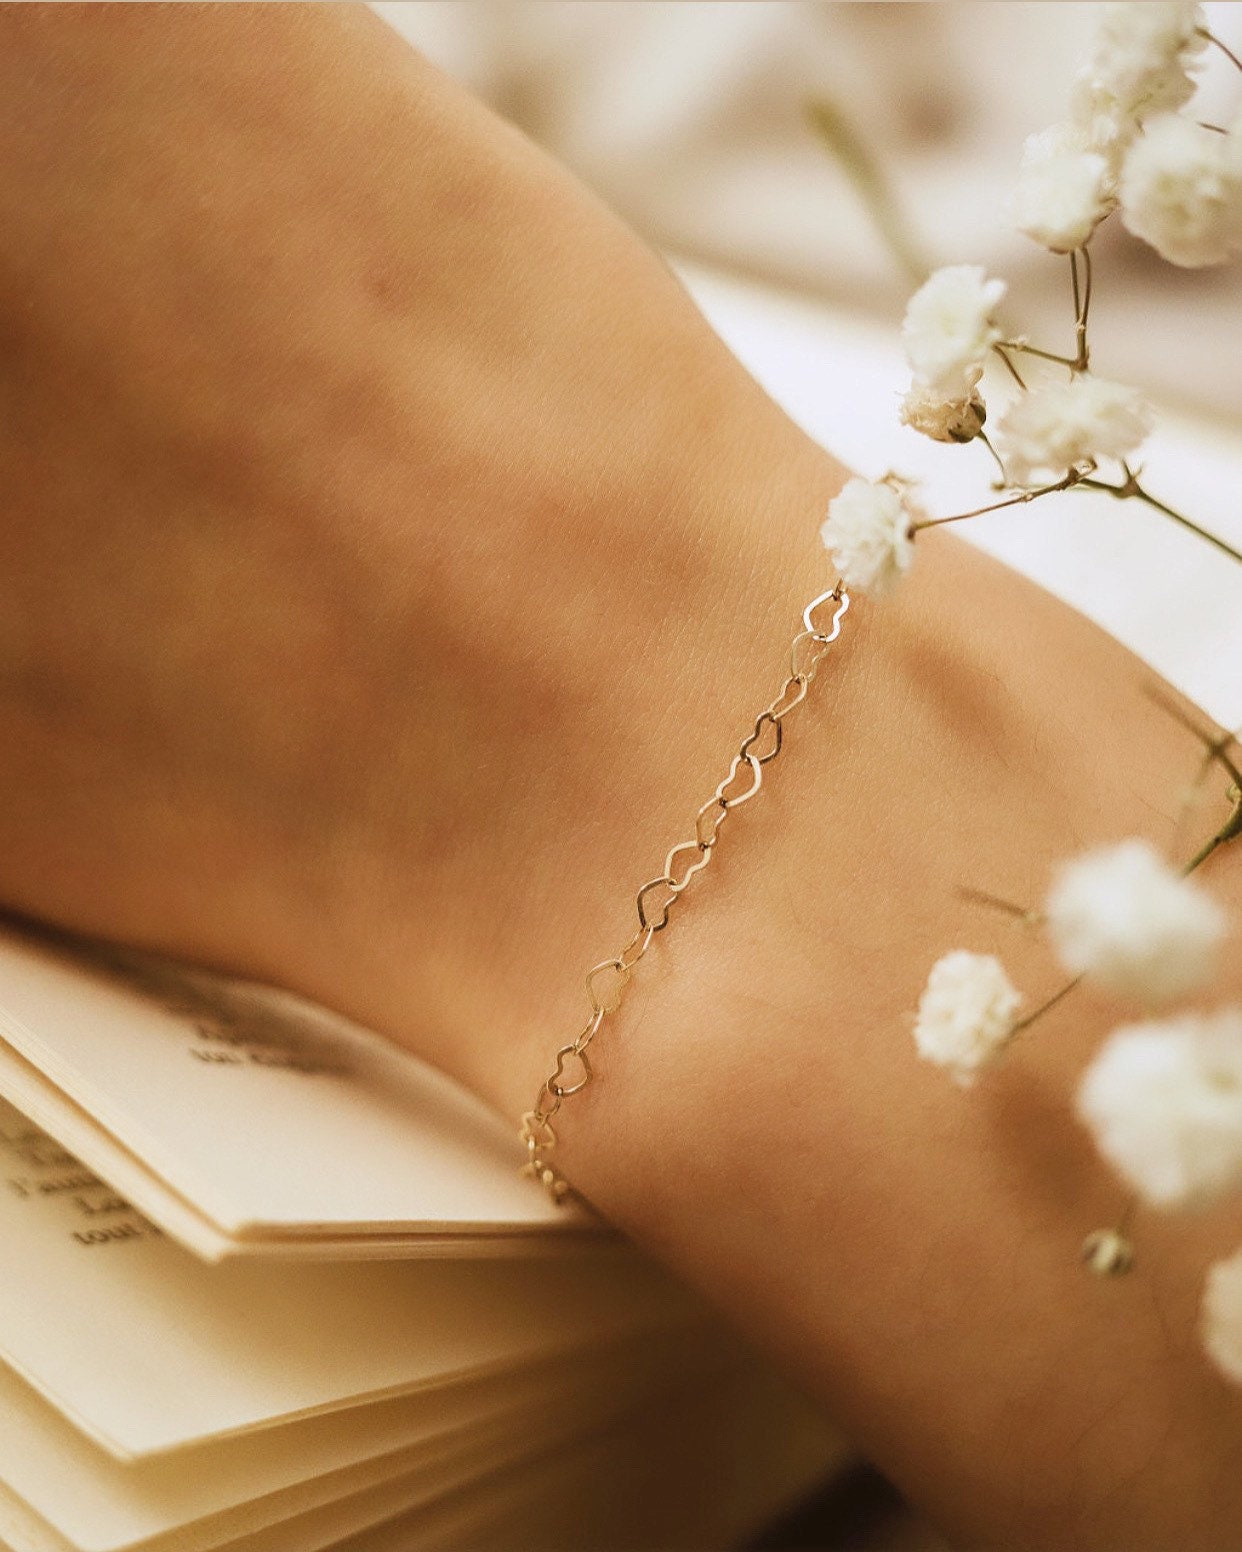 Girls' Polished Heart Charm Bracelet 14k Gold - In Season Jewelry